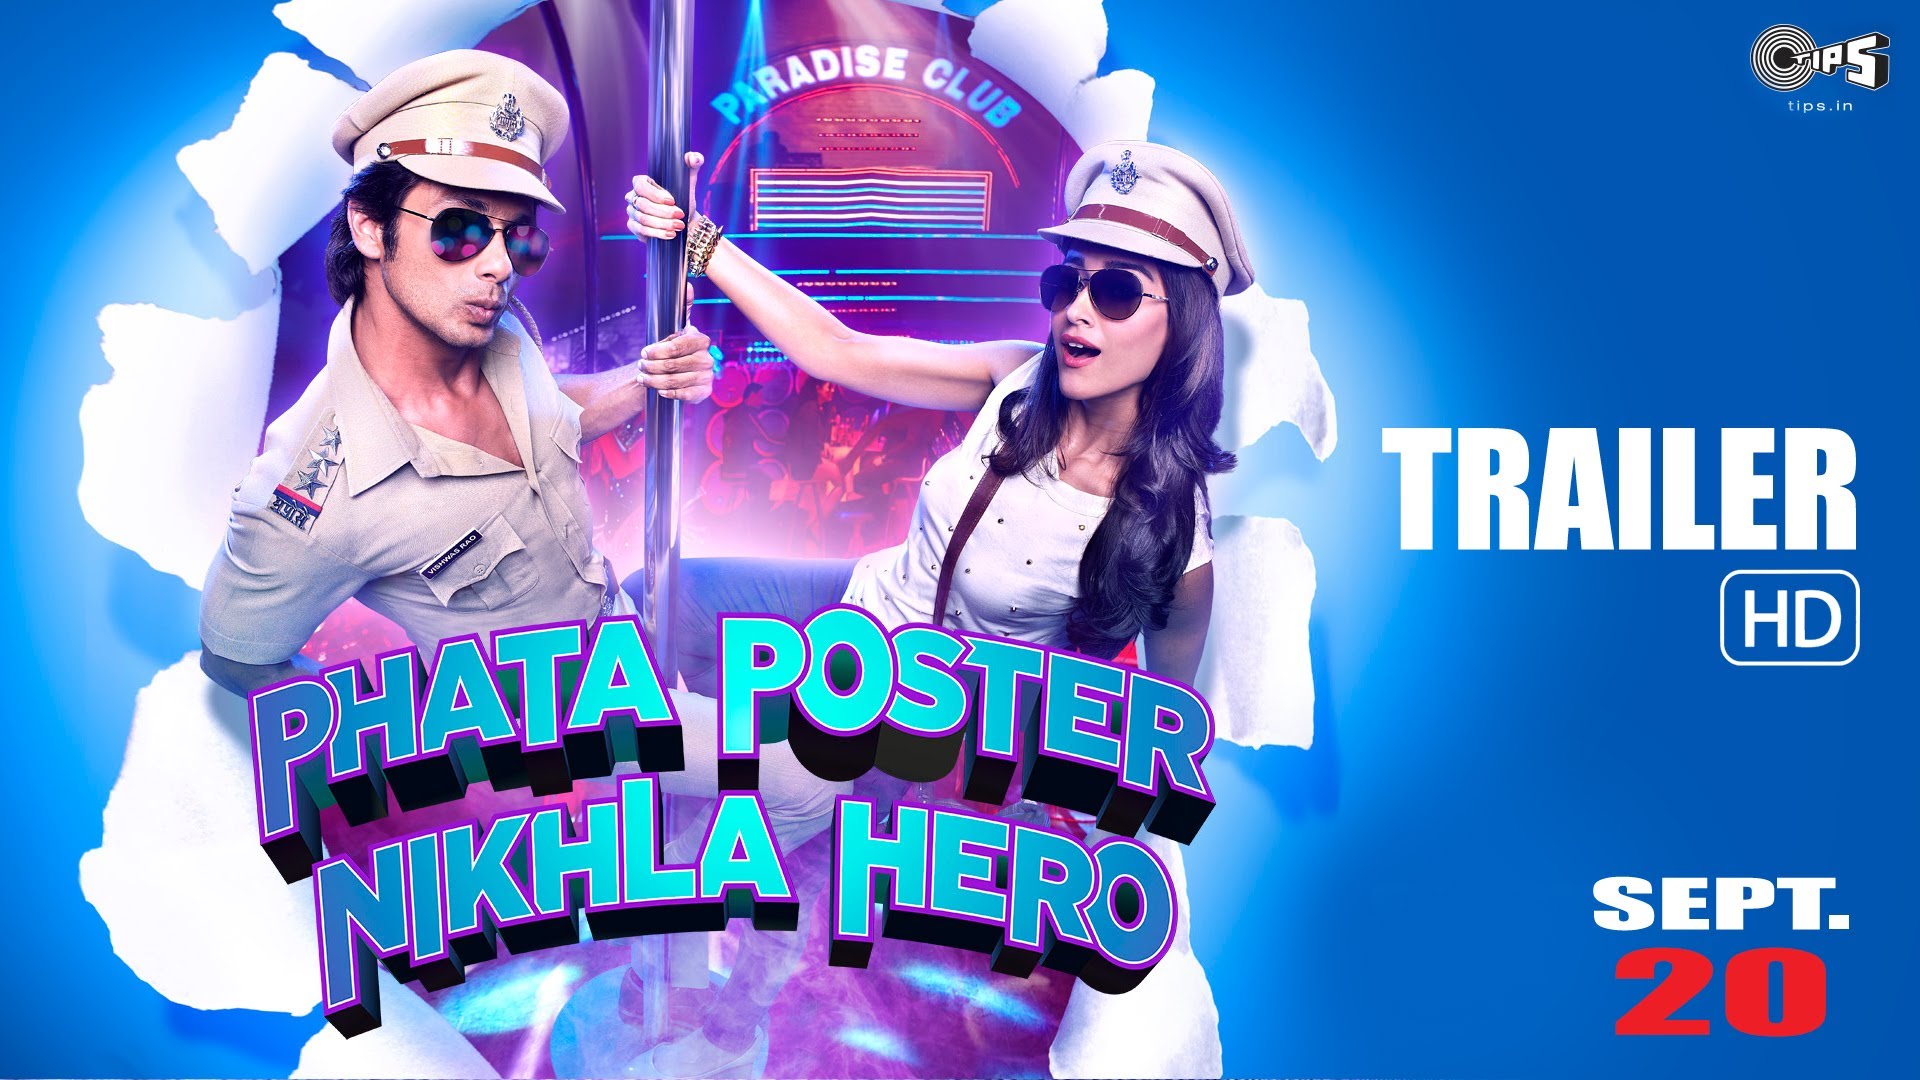 موزیک ویدیو های فیلم Phata Poster Nikhla Hero 2013